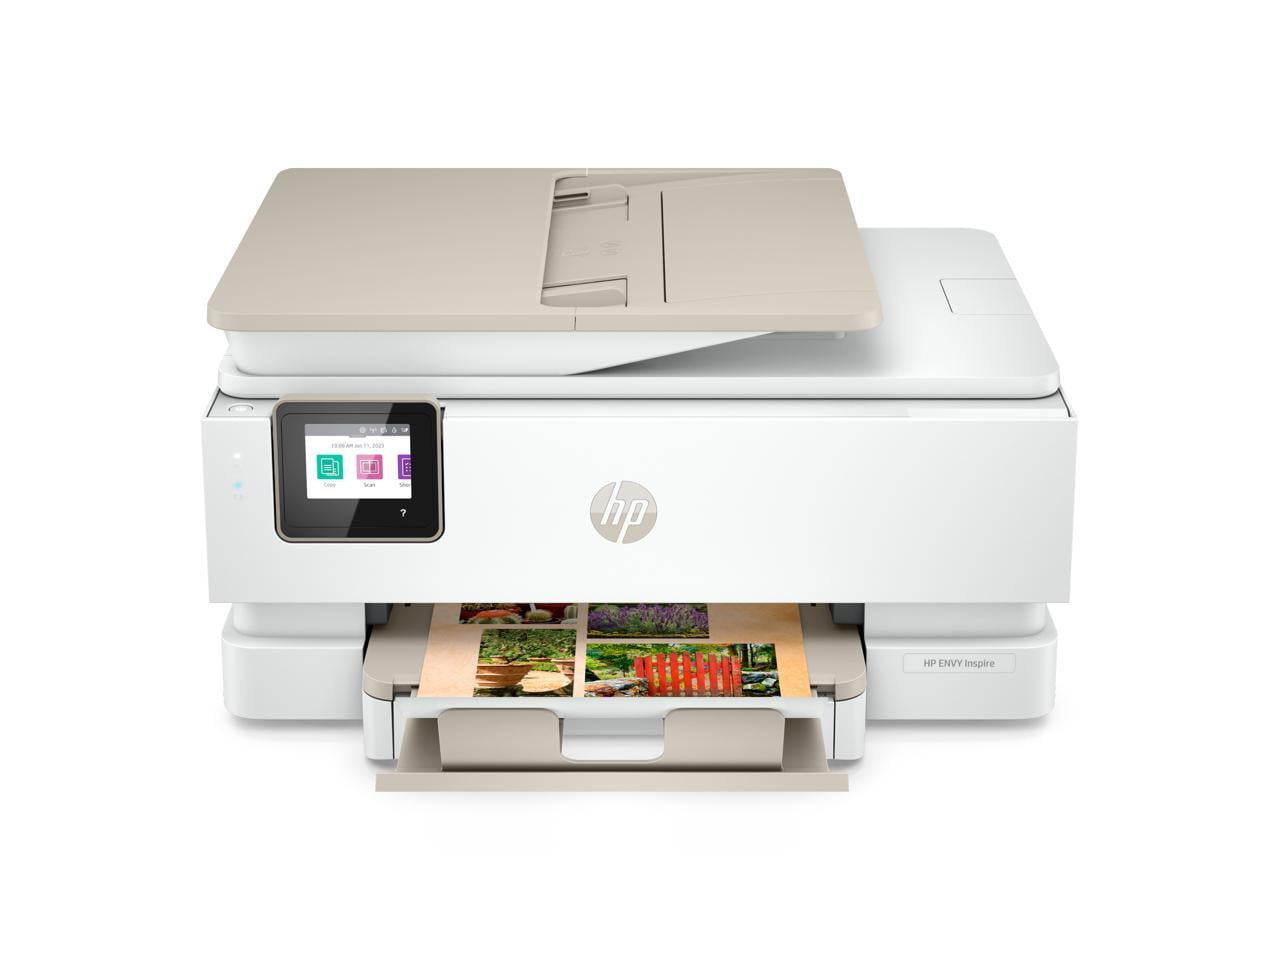 HP ENVY Inspire All-in-One InkJet Printer - White - Walmart.com